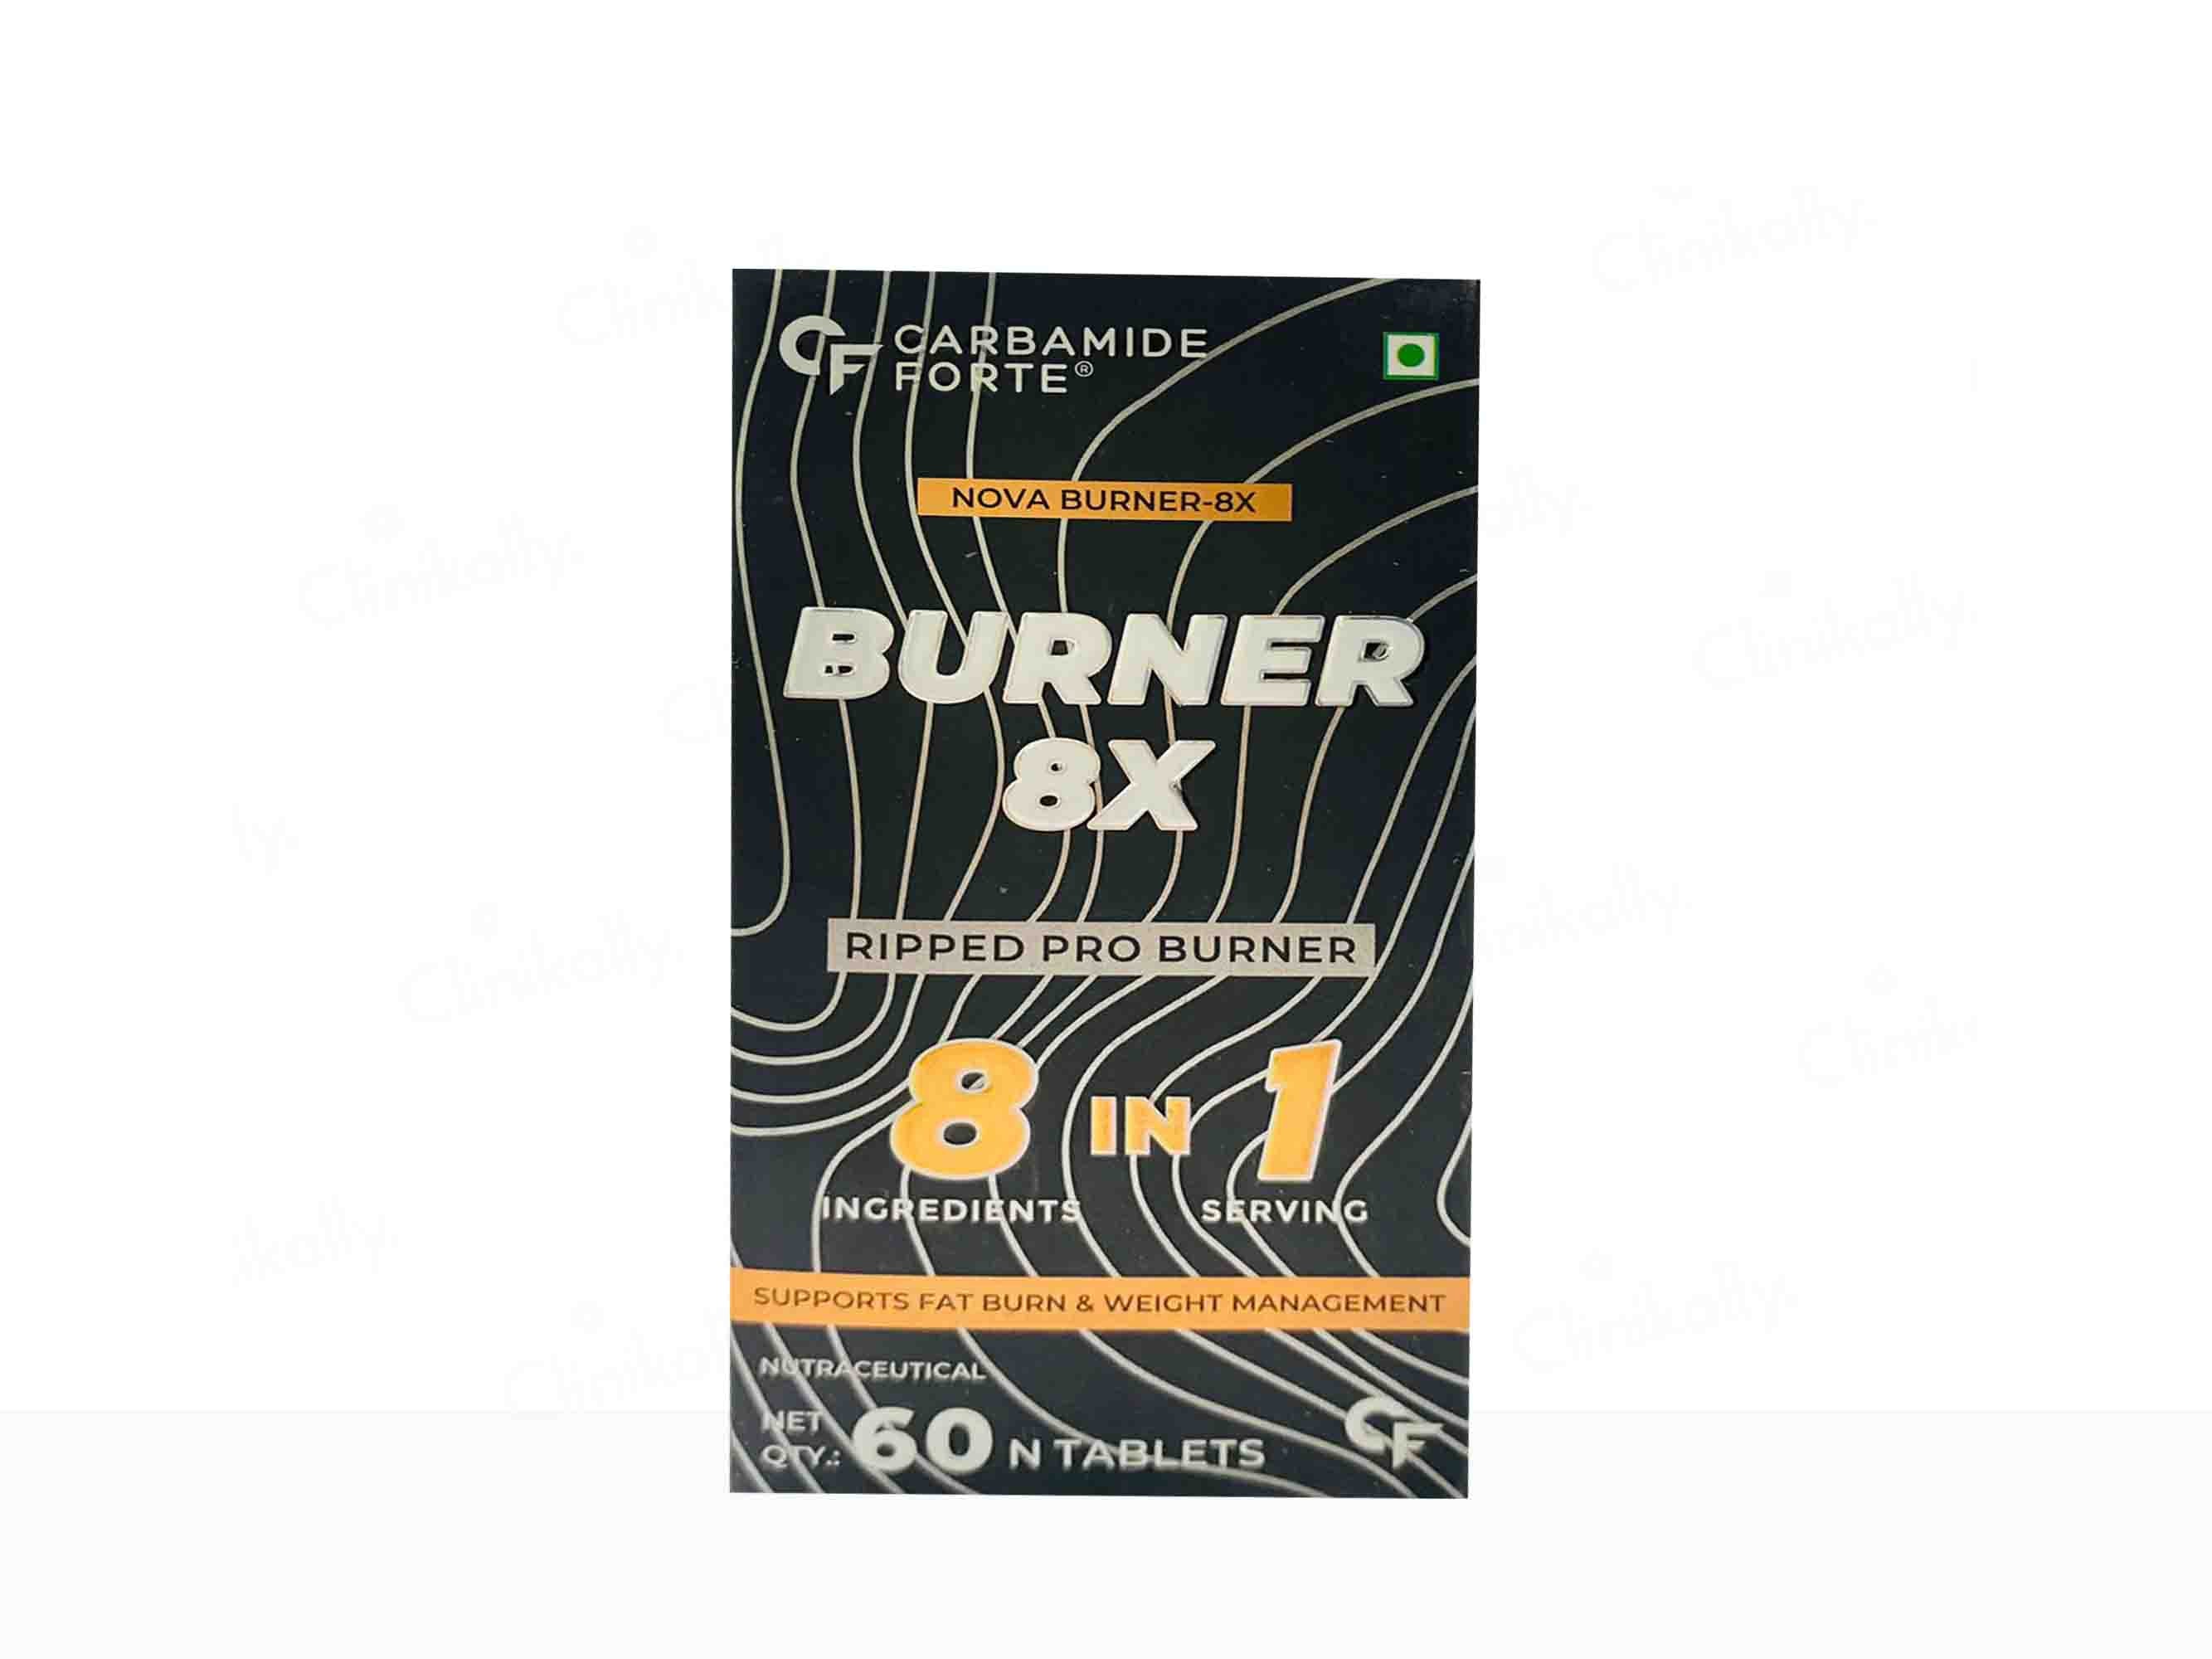 Carbamide Forte Burner 8X Ripped Pro Burner Tablet